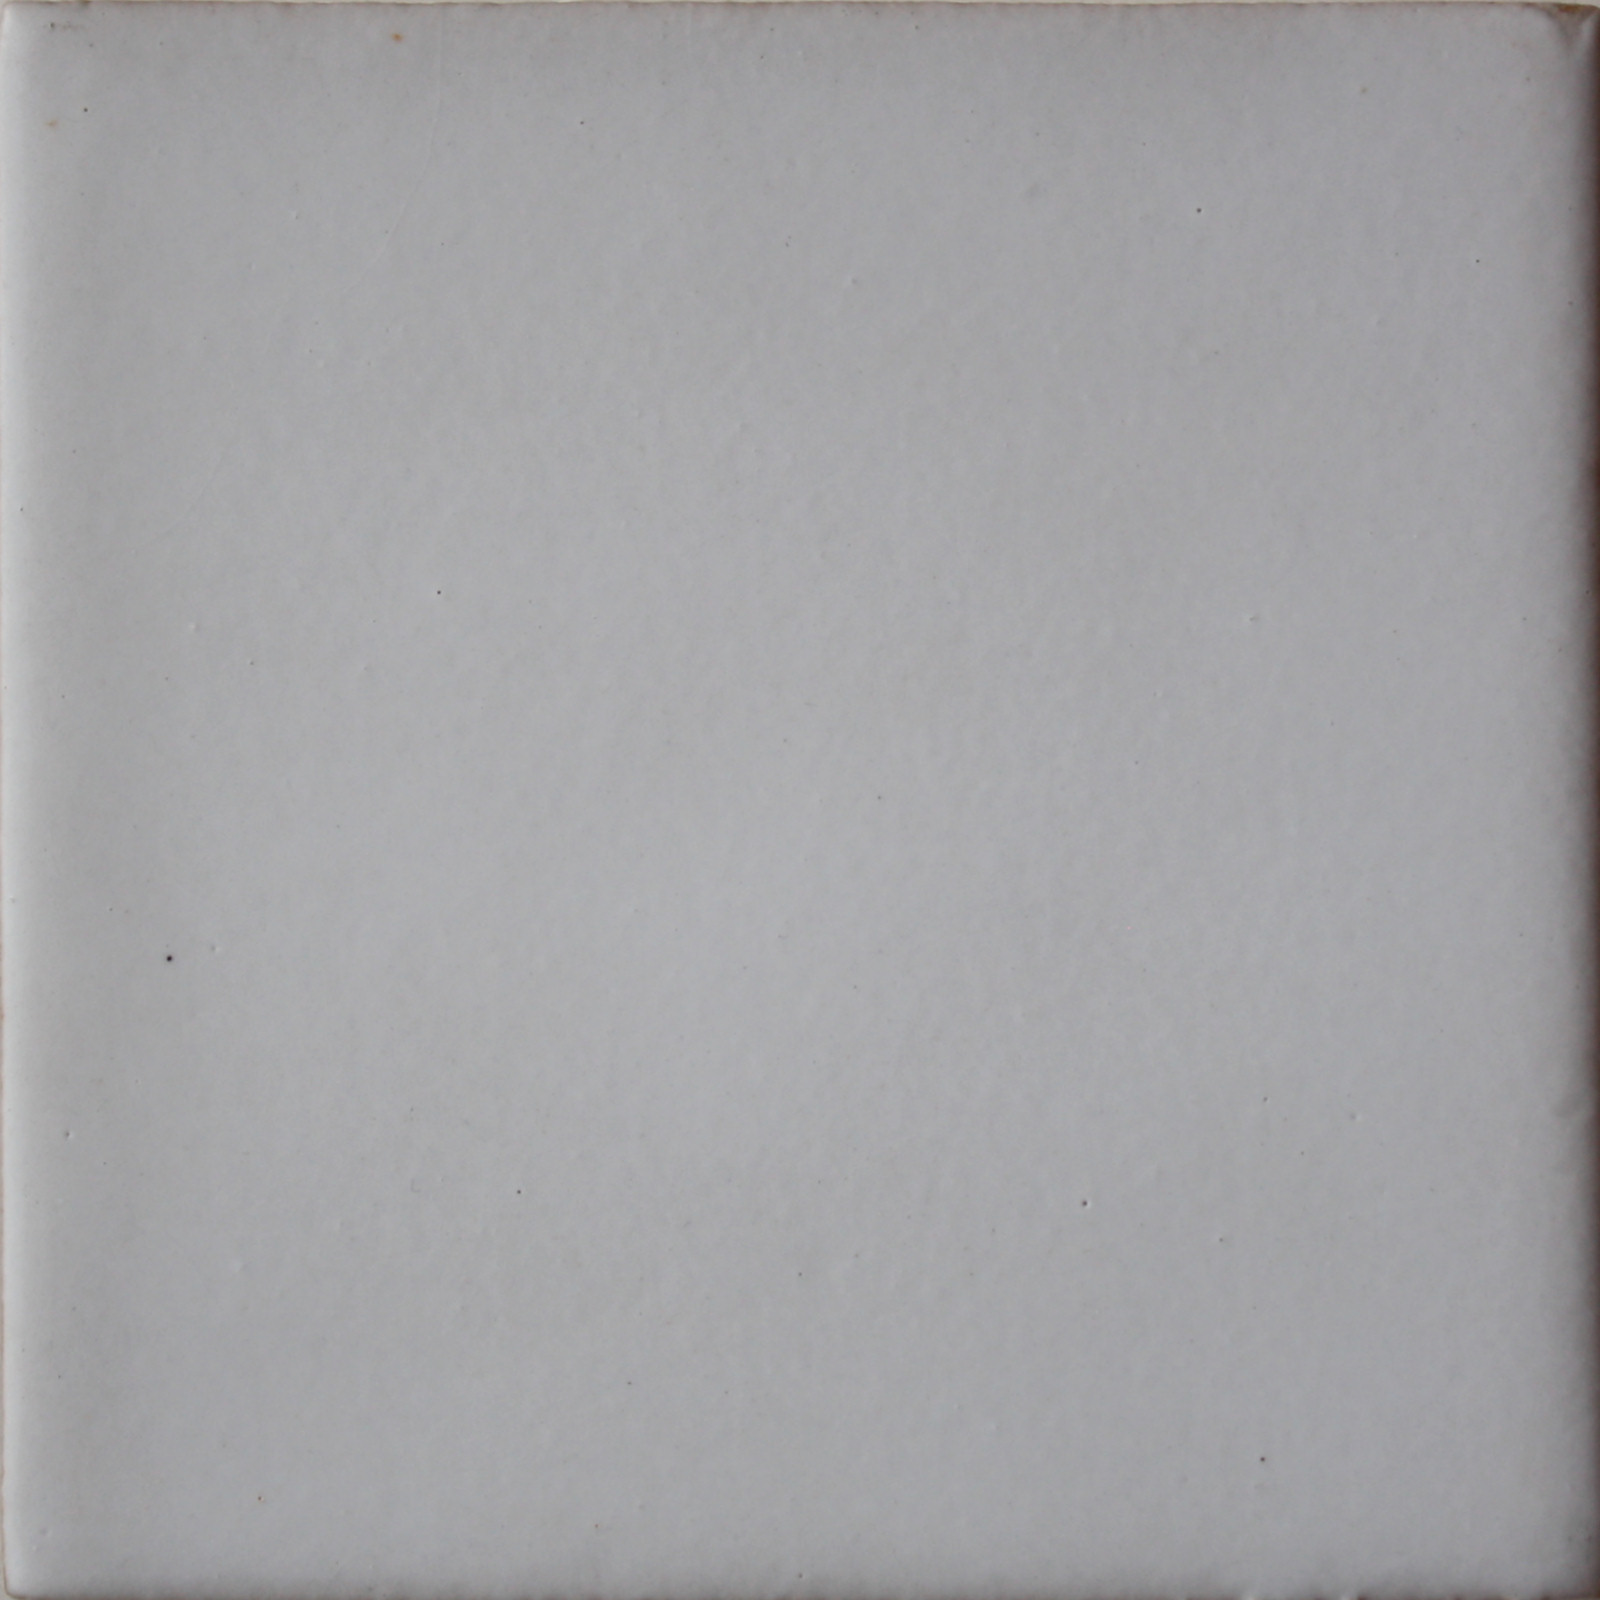 TalaMex Pure White Mate Malibu Tile